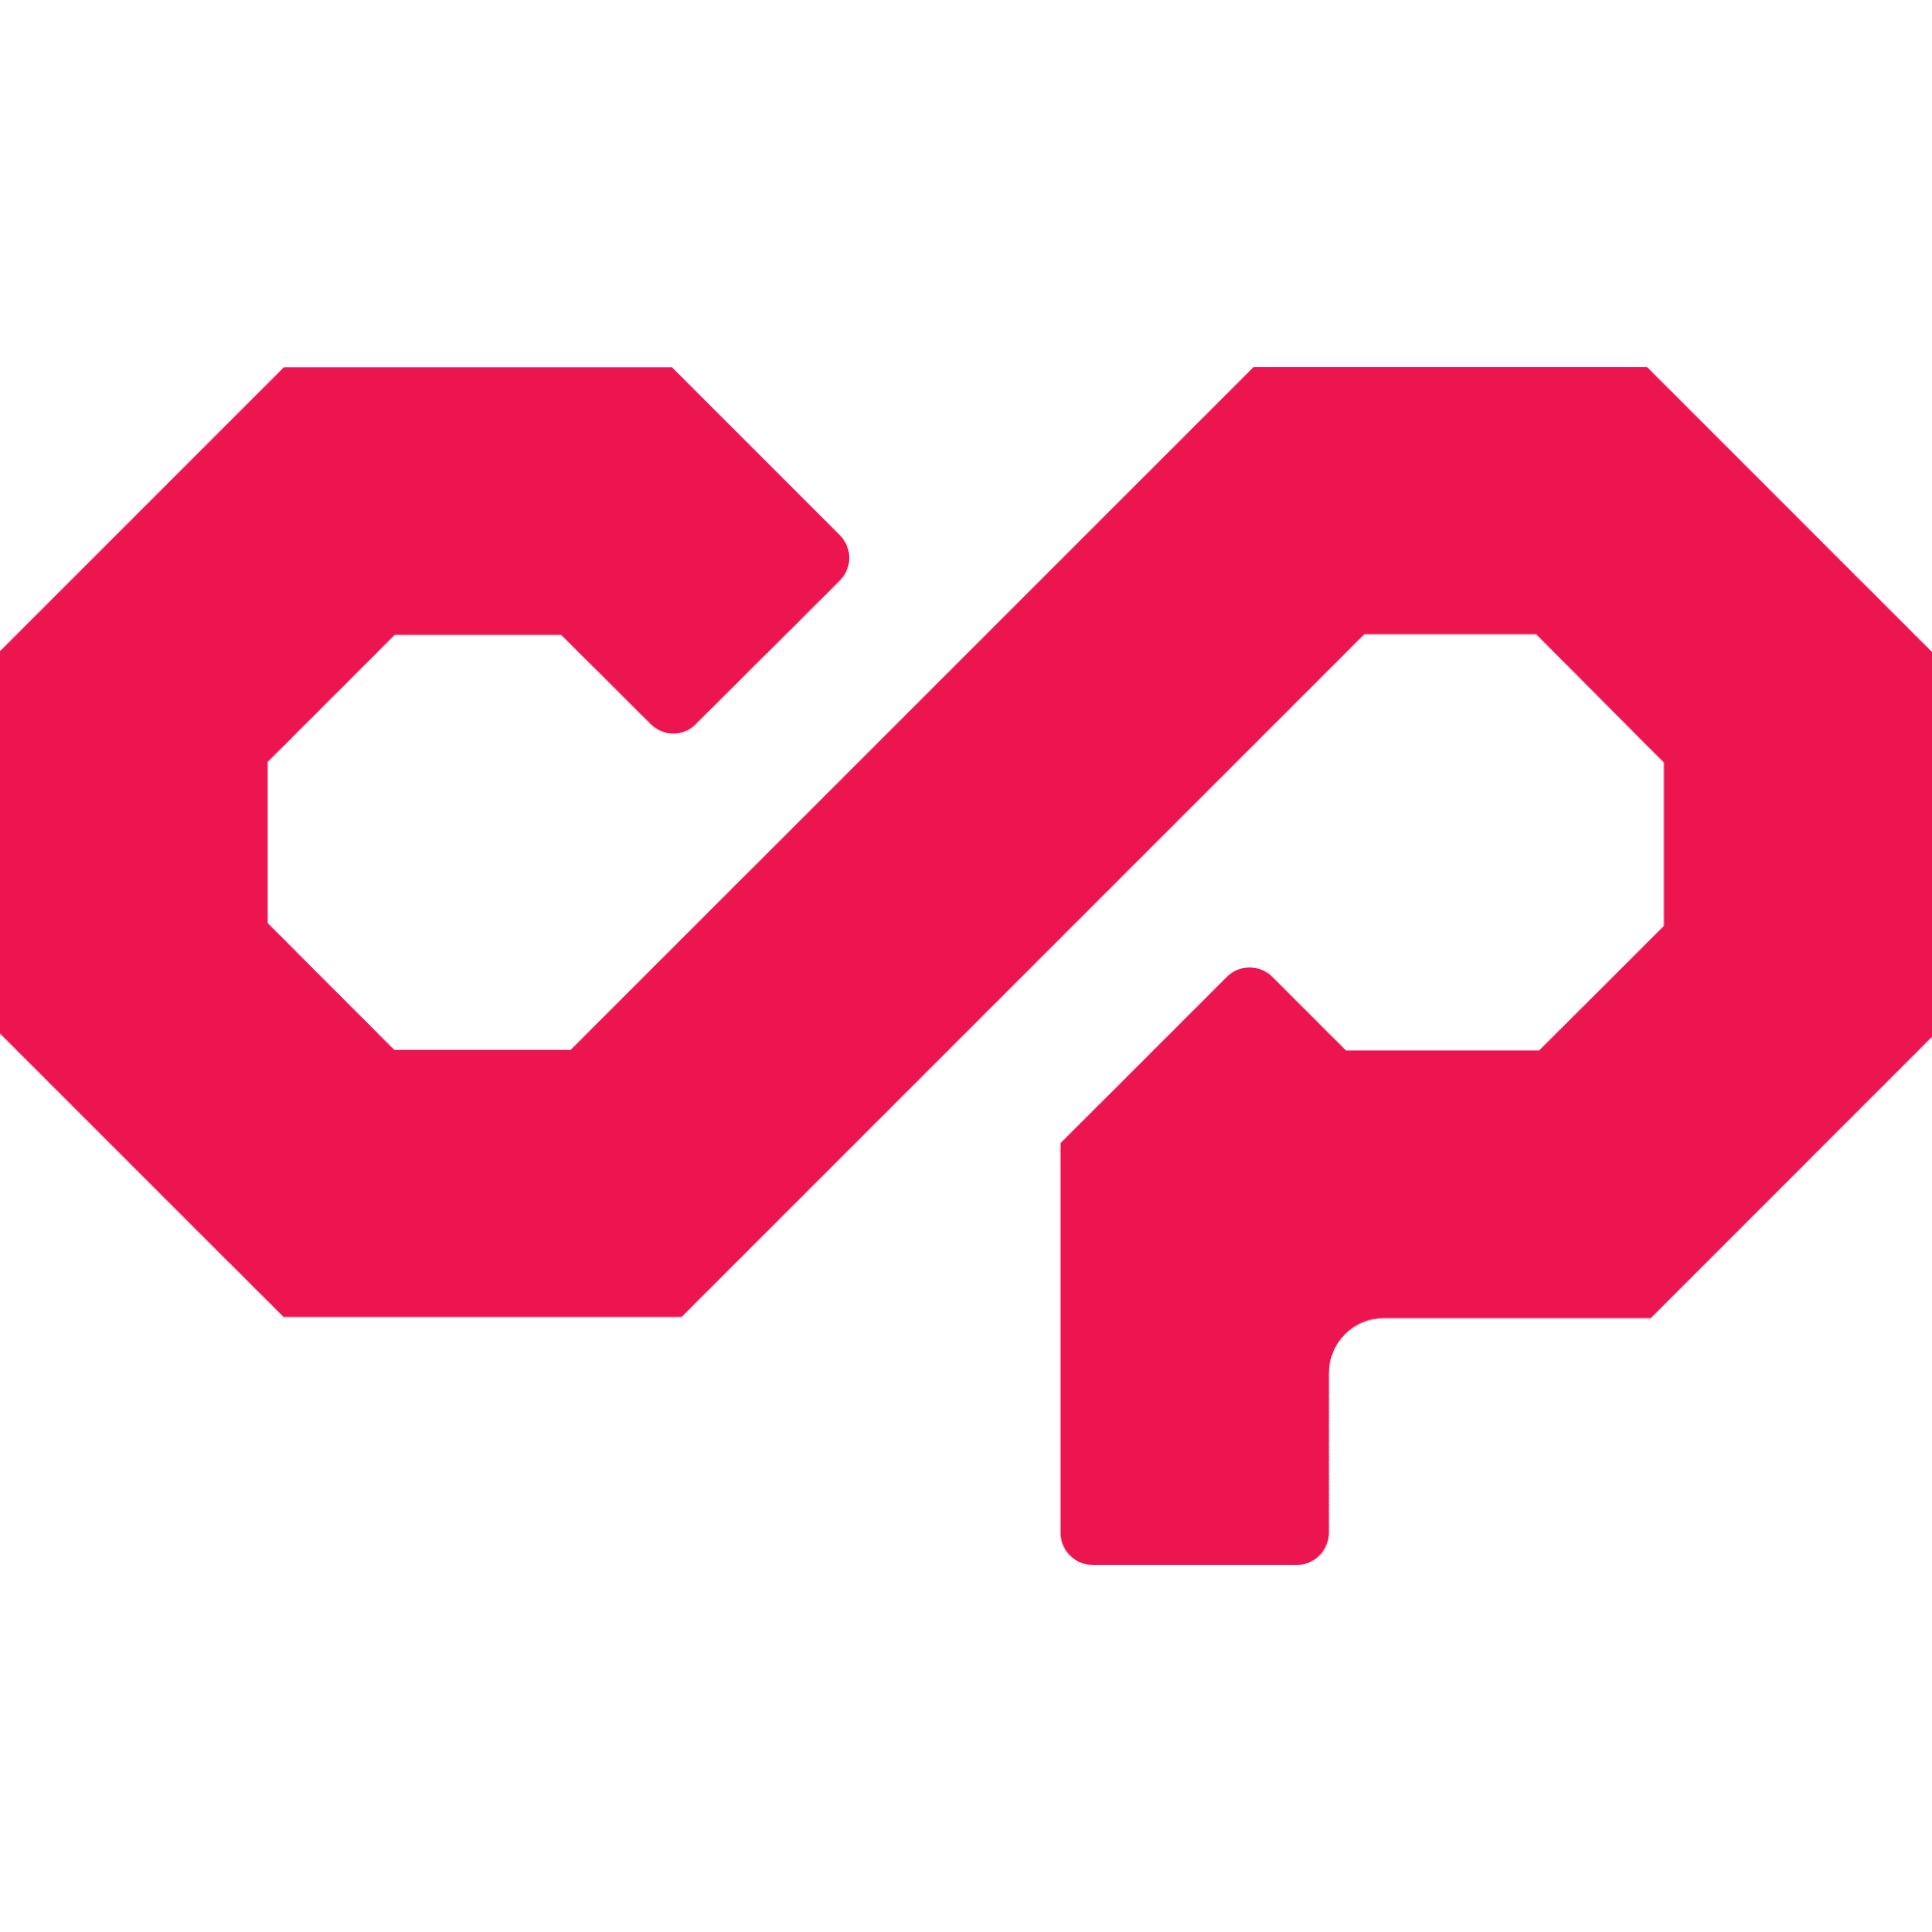 Counterparty (XCP) logo